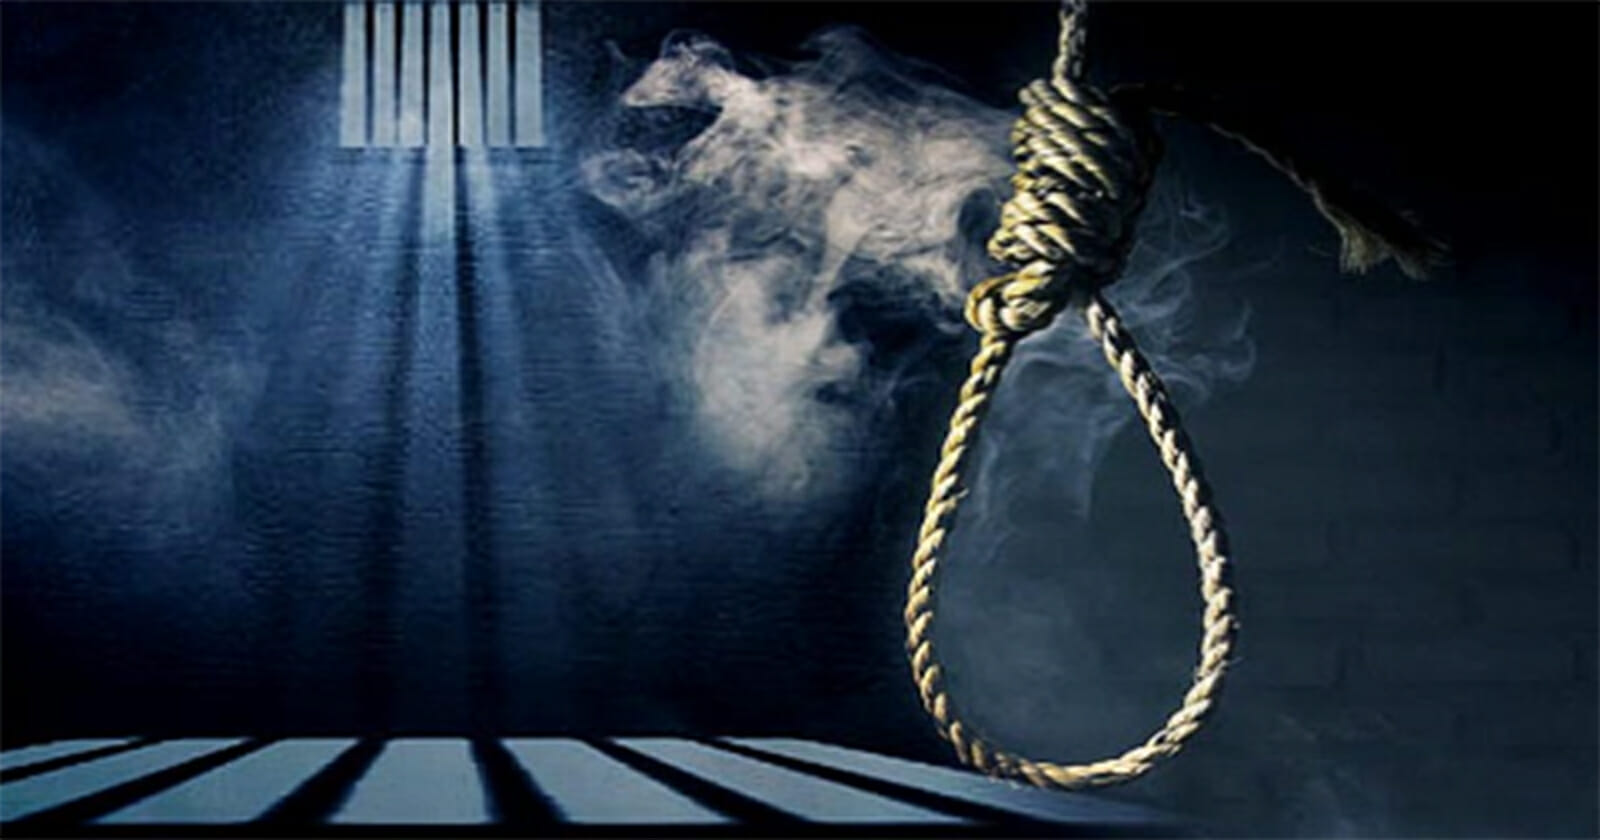  أحكام إعدام ضد معتقلي رأي عسكريين